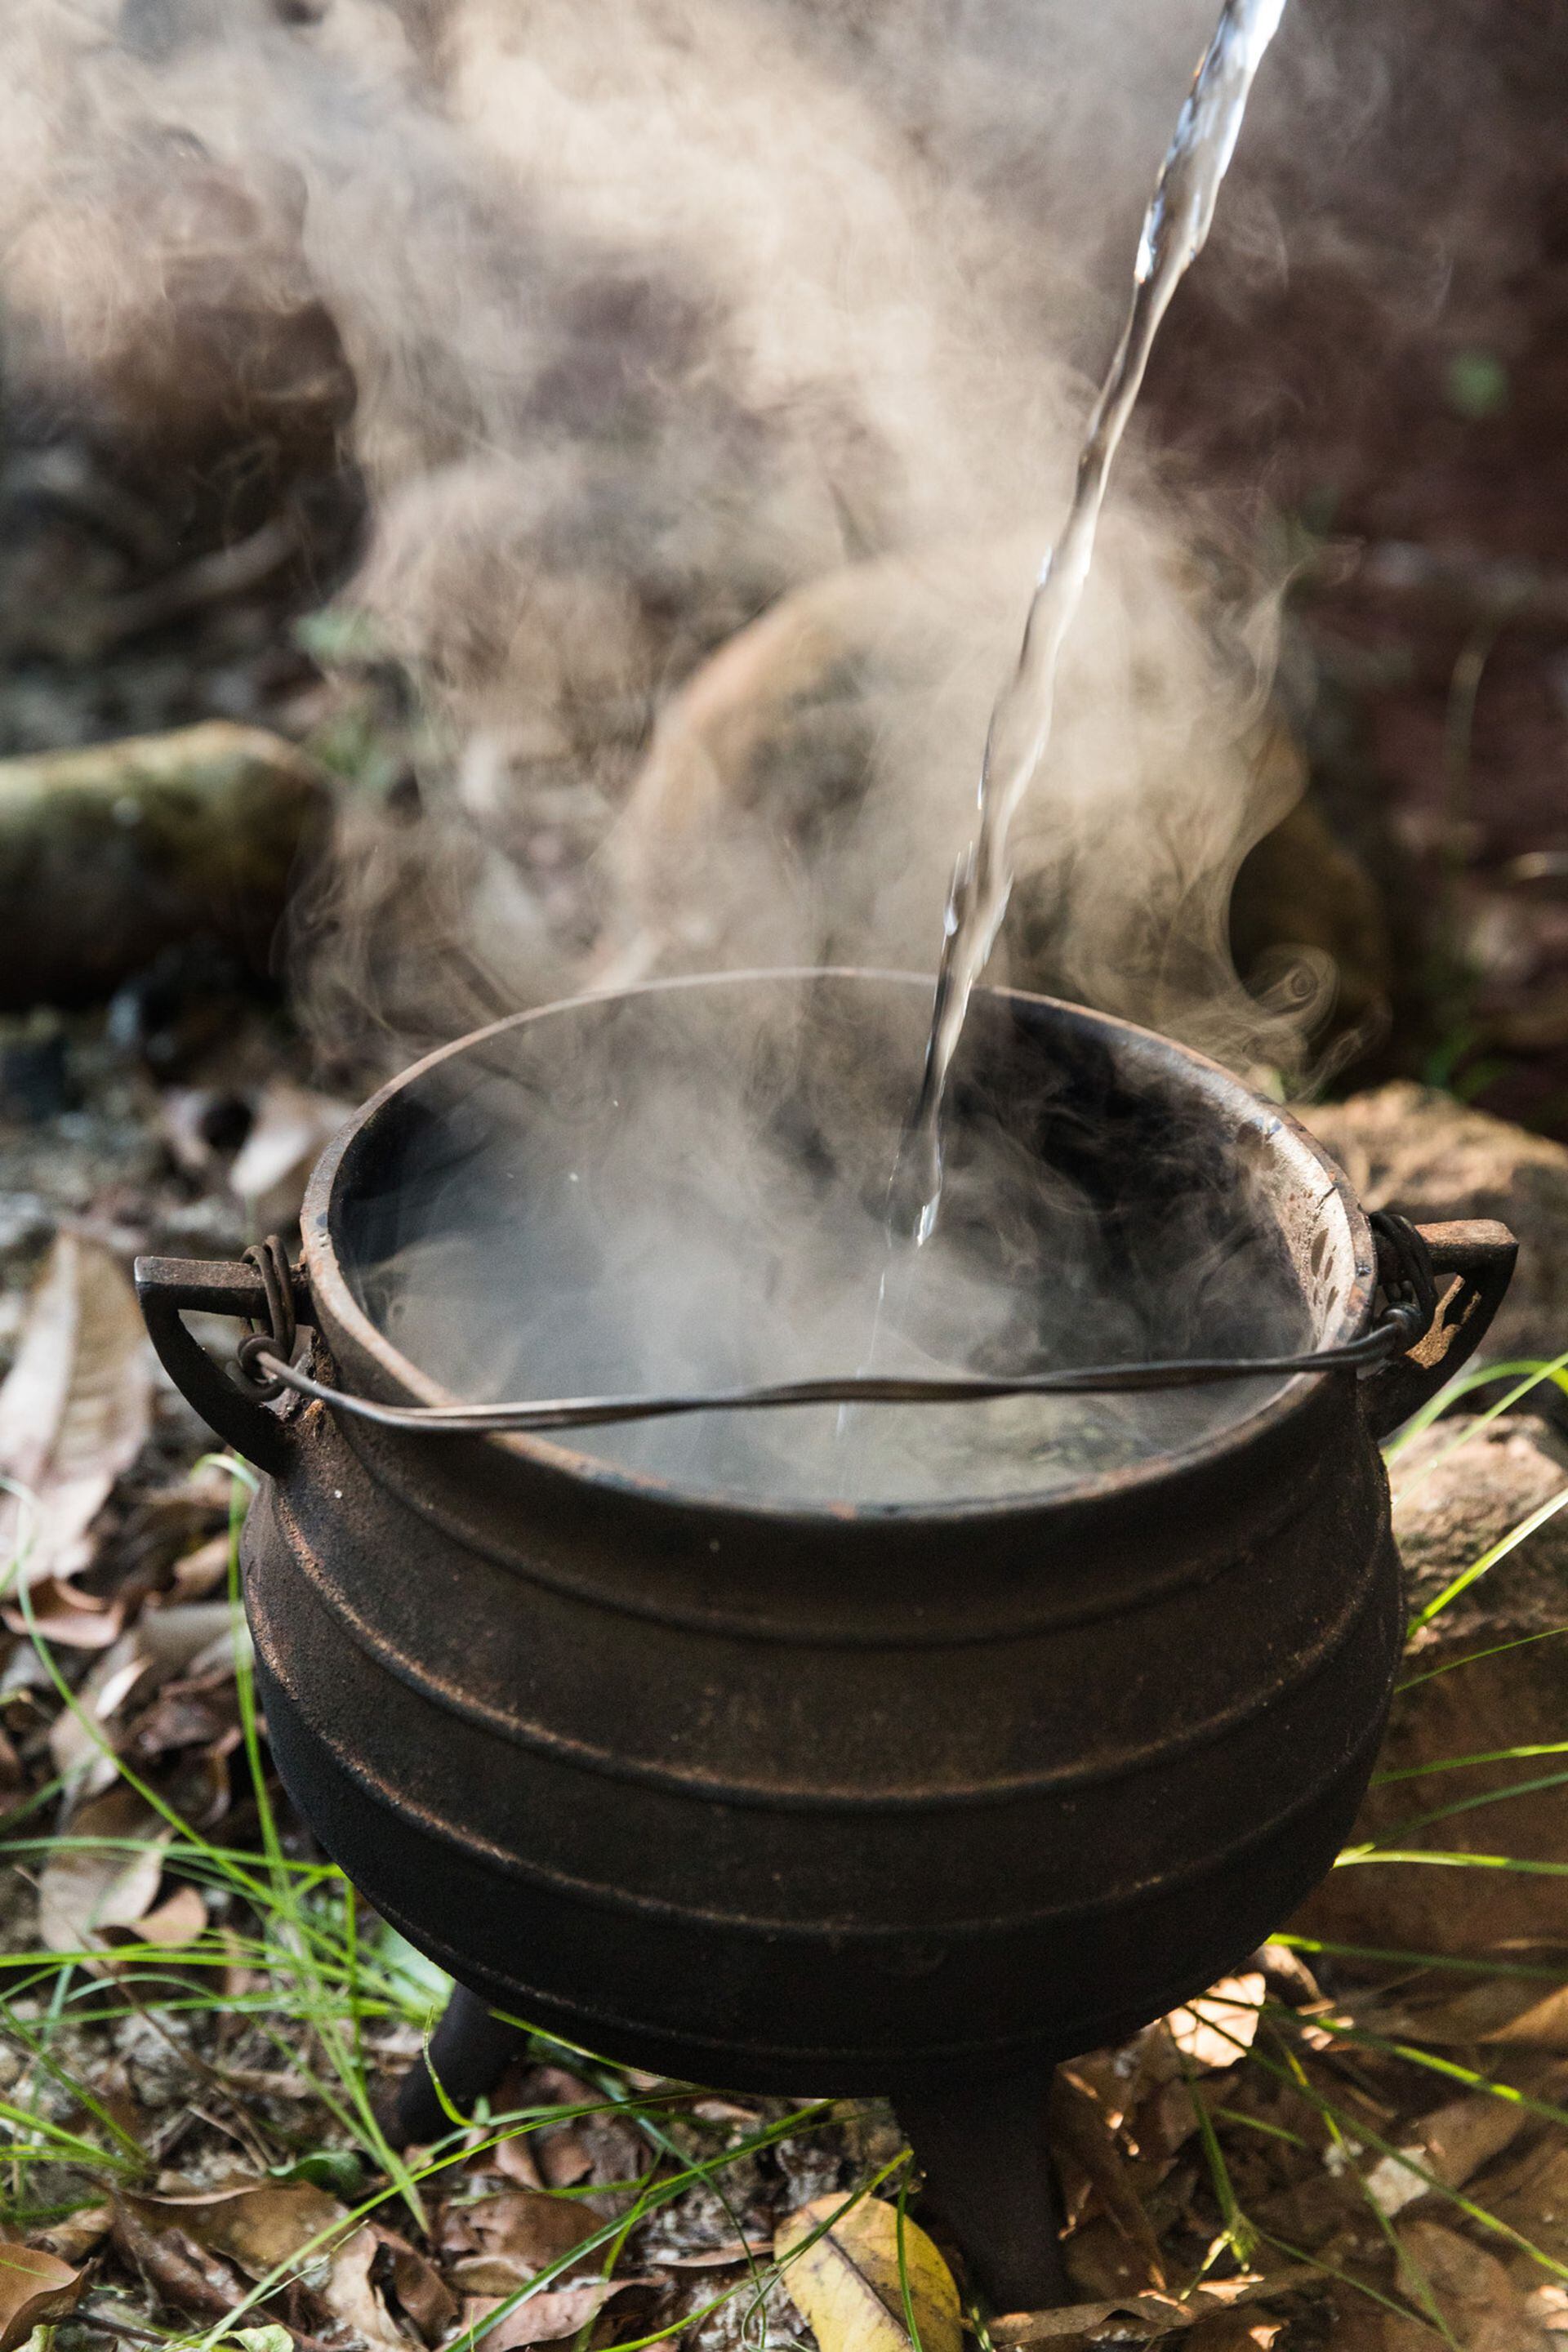 En una marmita de hierro se prepara el mate cocido quemado.